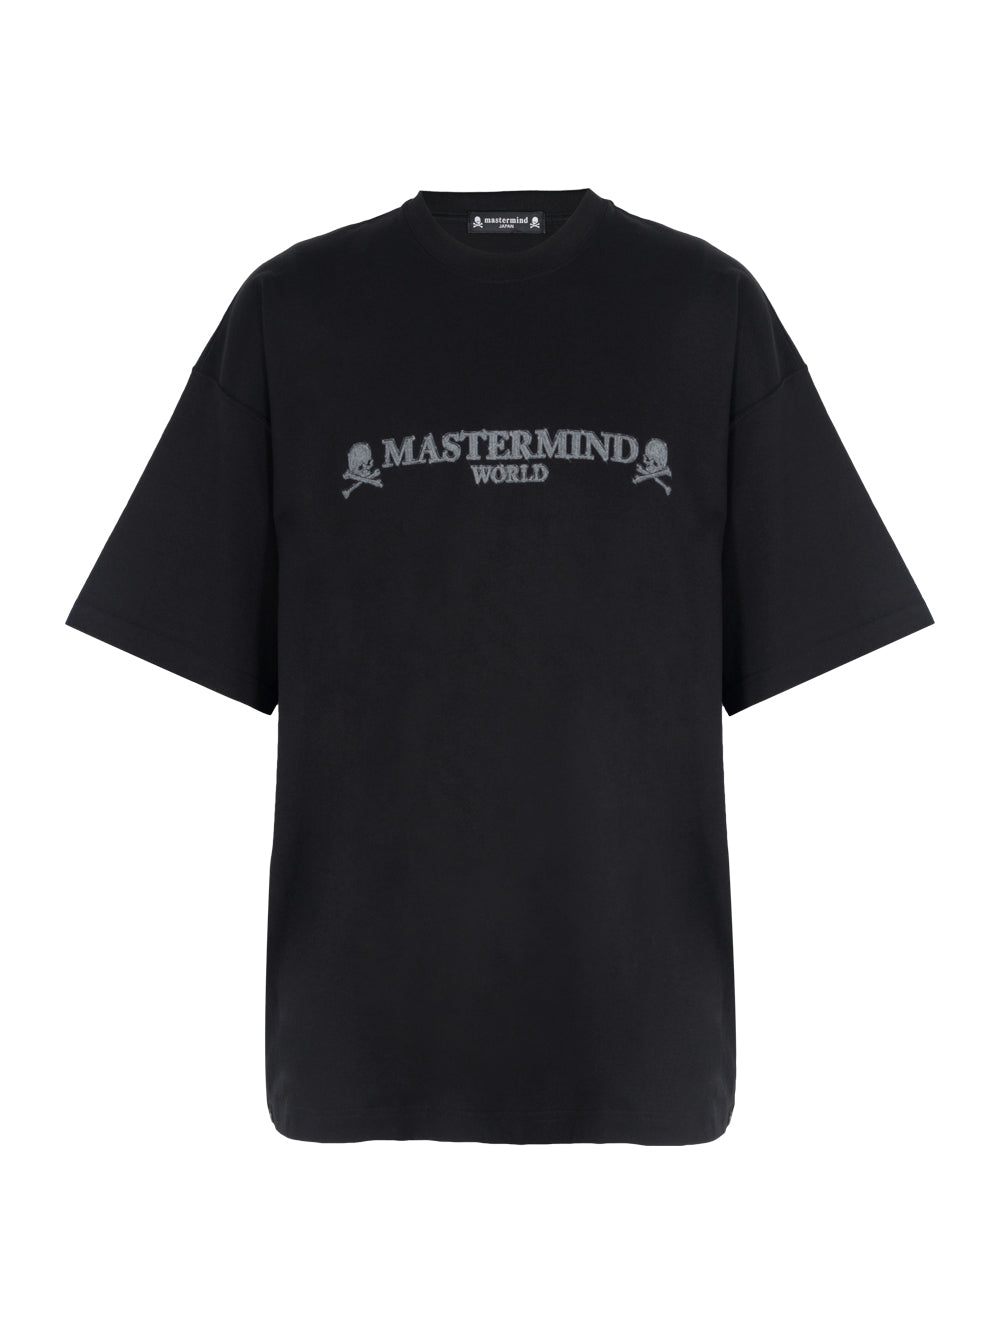 Mastermind World-Mastermind World logo and skull T-shirt-Black-1